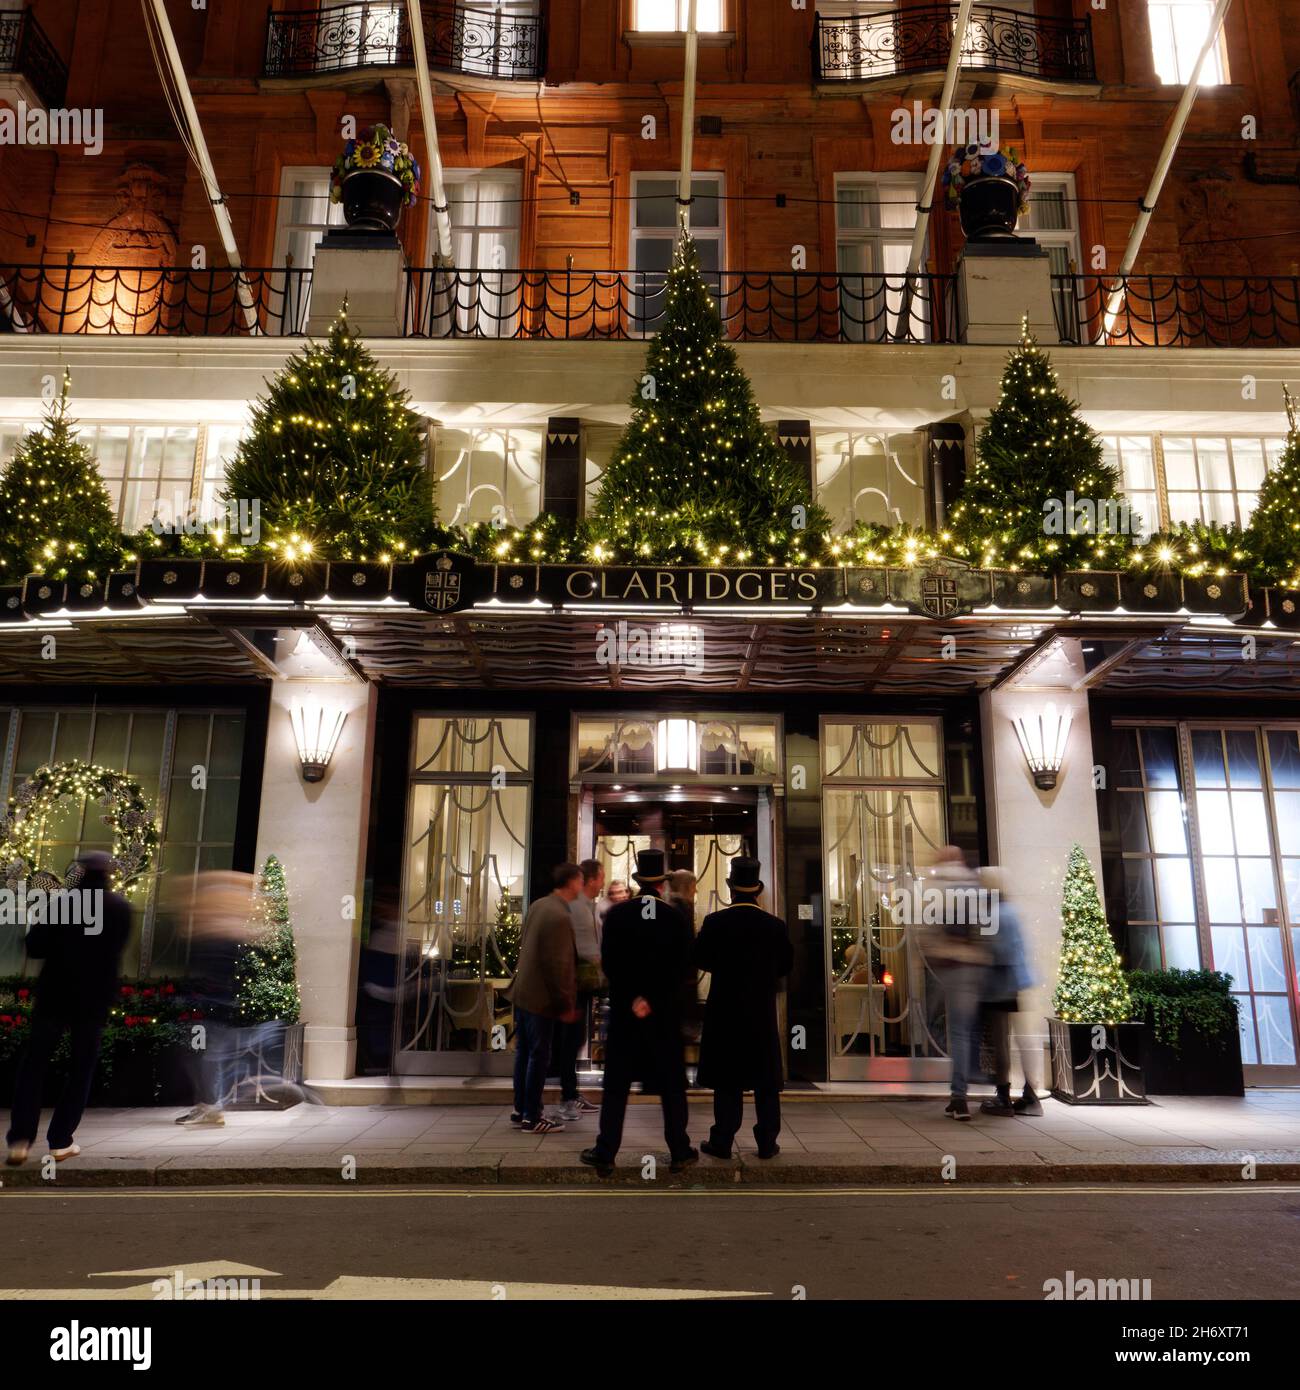 Londra, Greater London, Inghilterra, novembre 13 2021: Doormen Outside Claridges Hotel 5 stelle di lusso con una mostra di Natale. Foto Stock